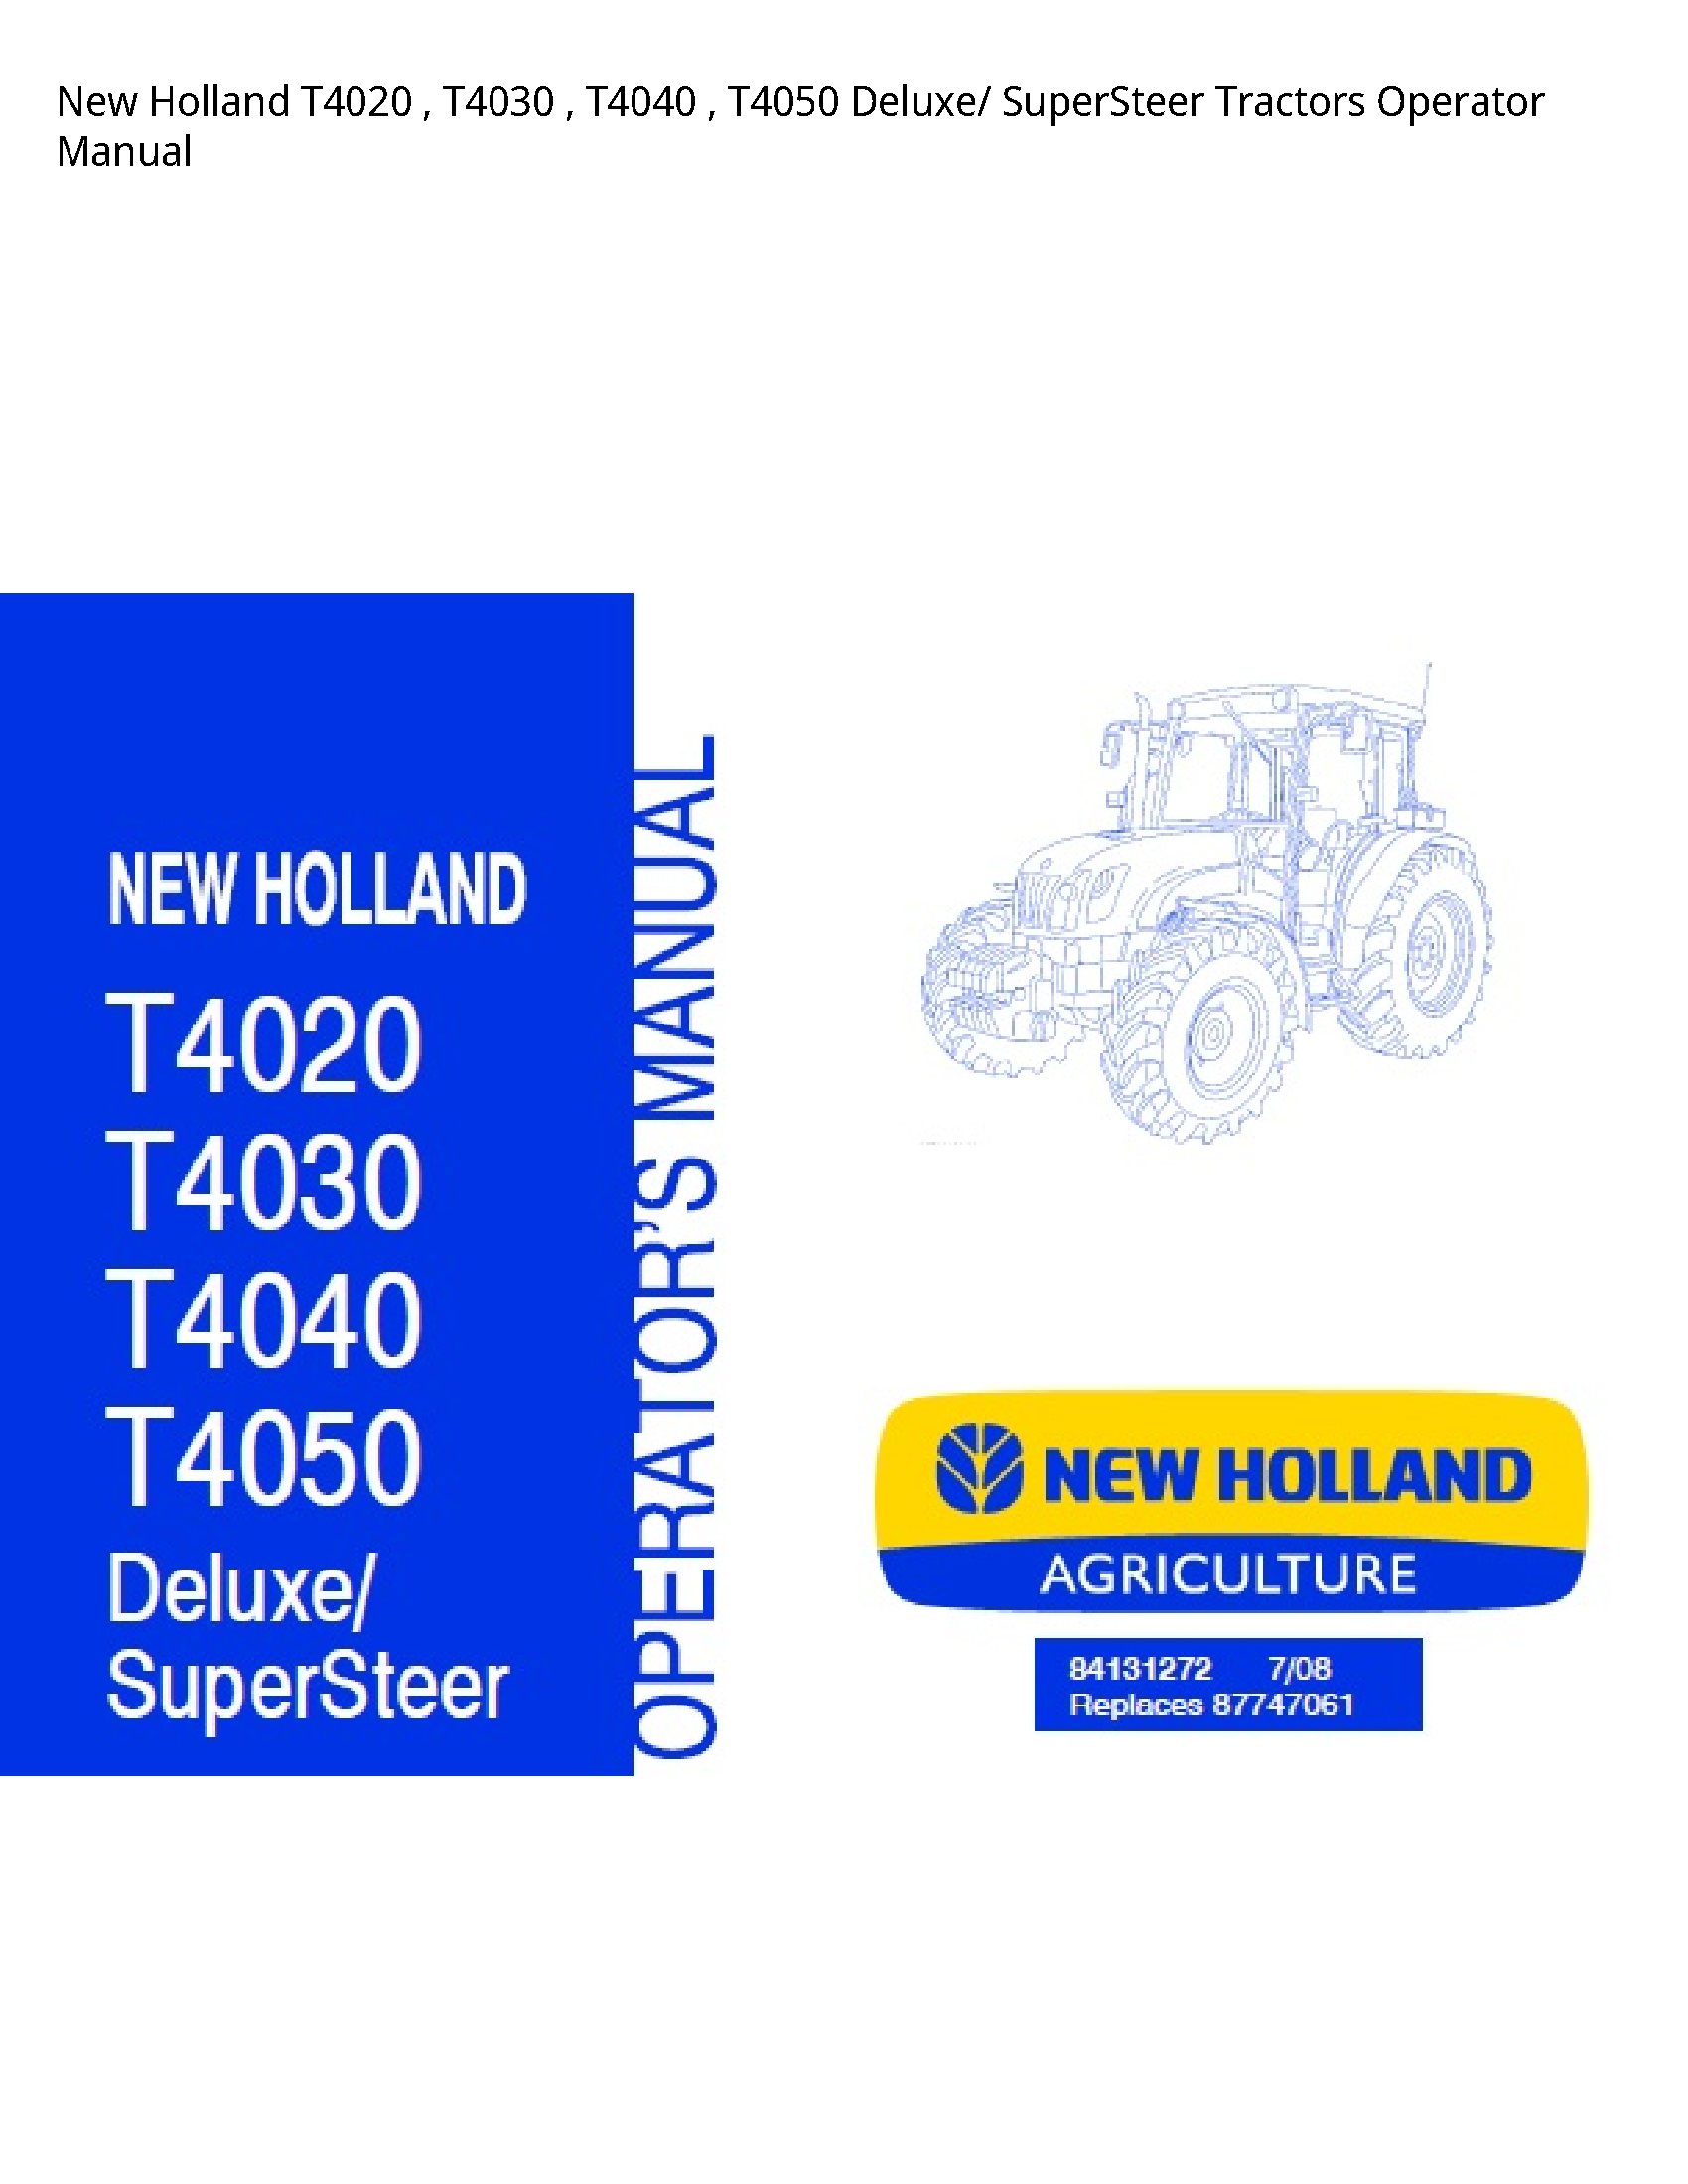 New Holland T4020 Deluxe/ SuperSteer Tractors Operator manual